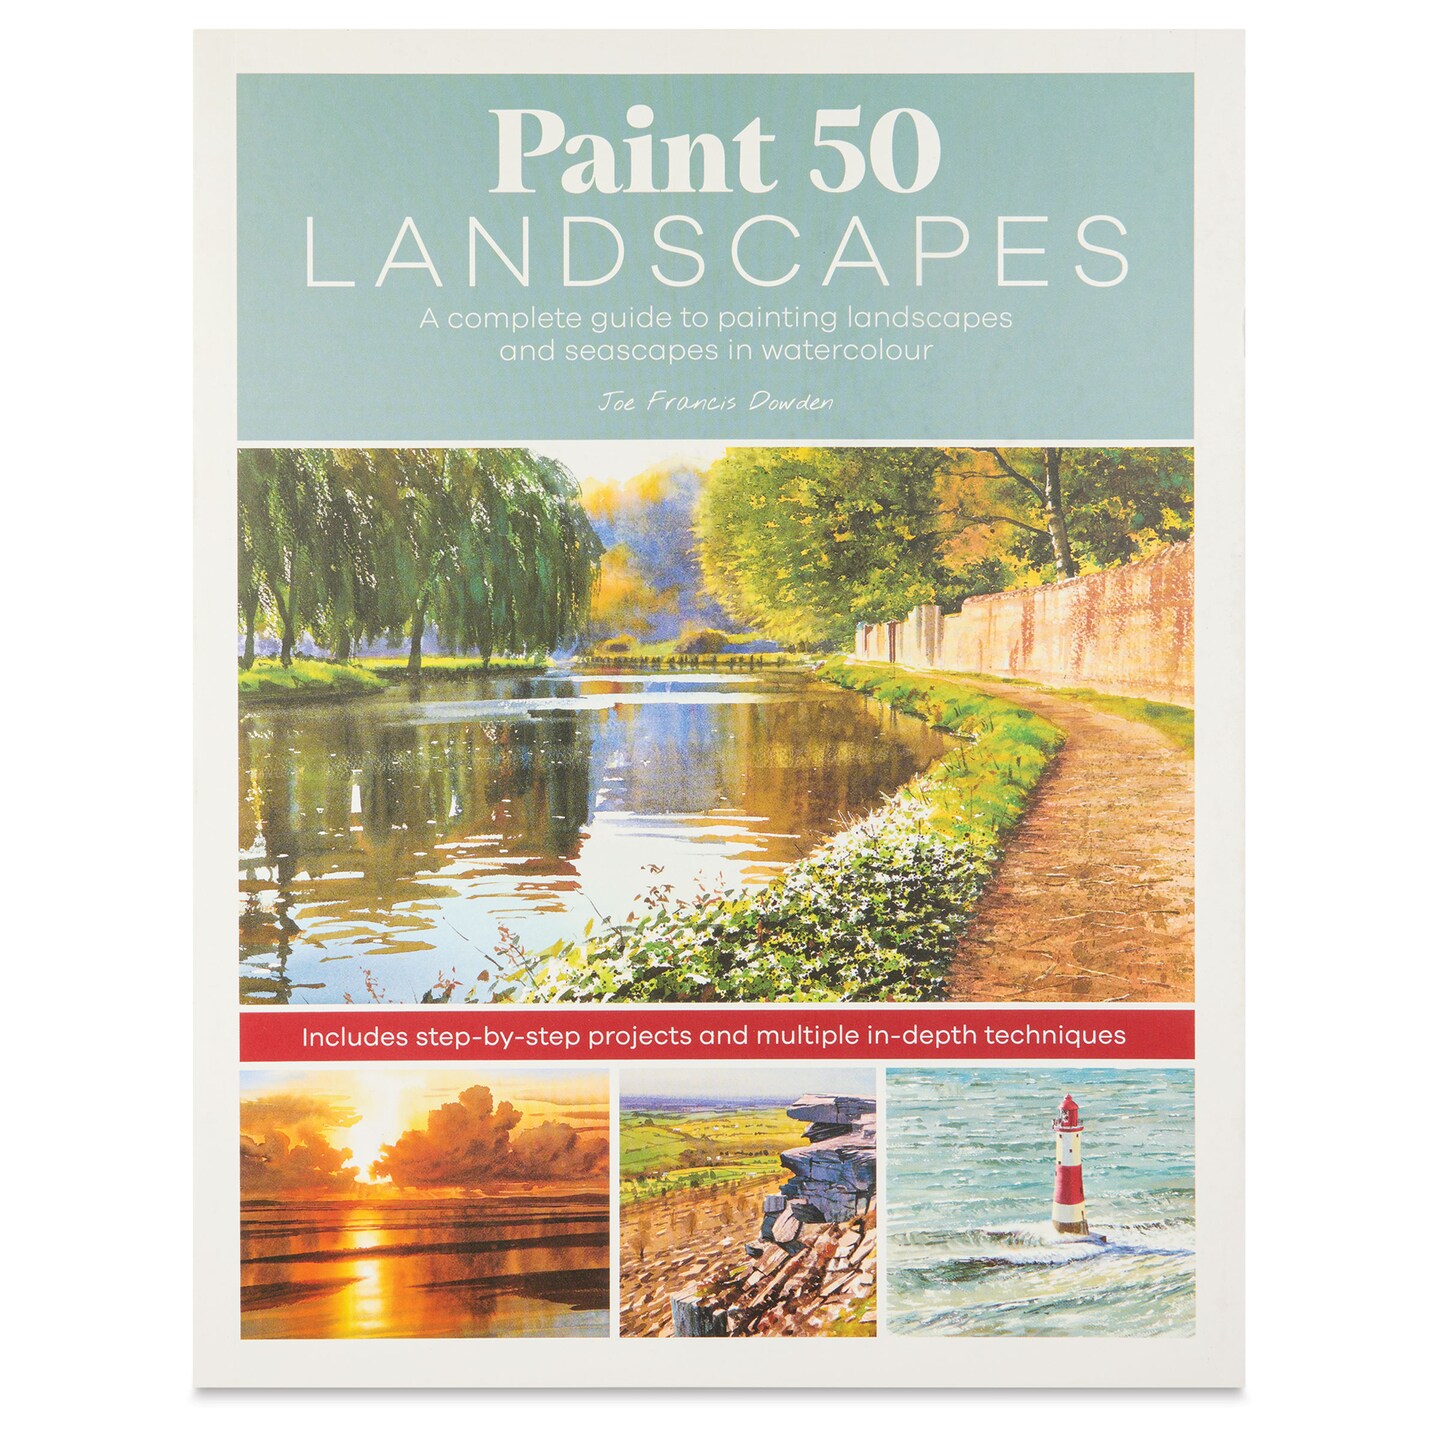 Paint 50 Landscapes